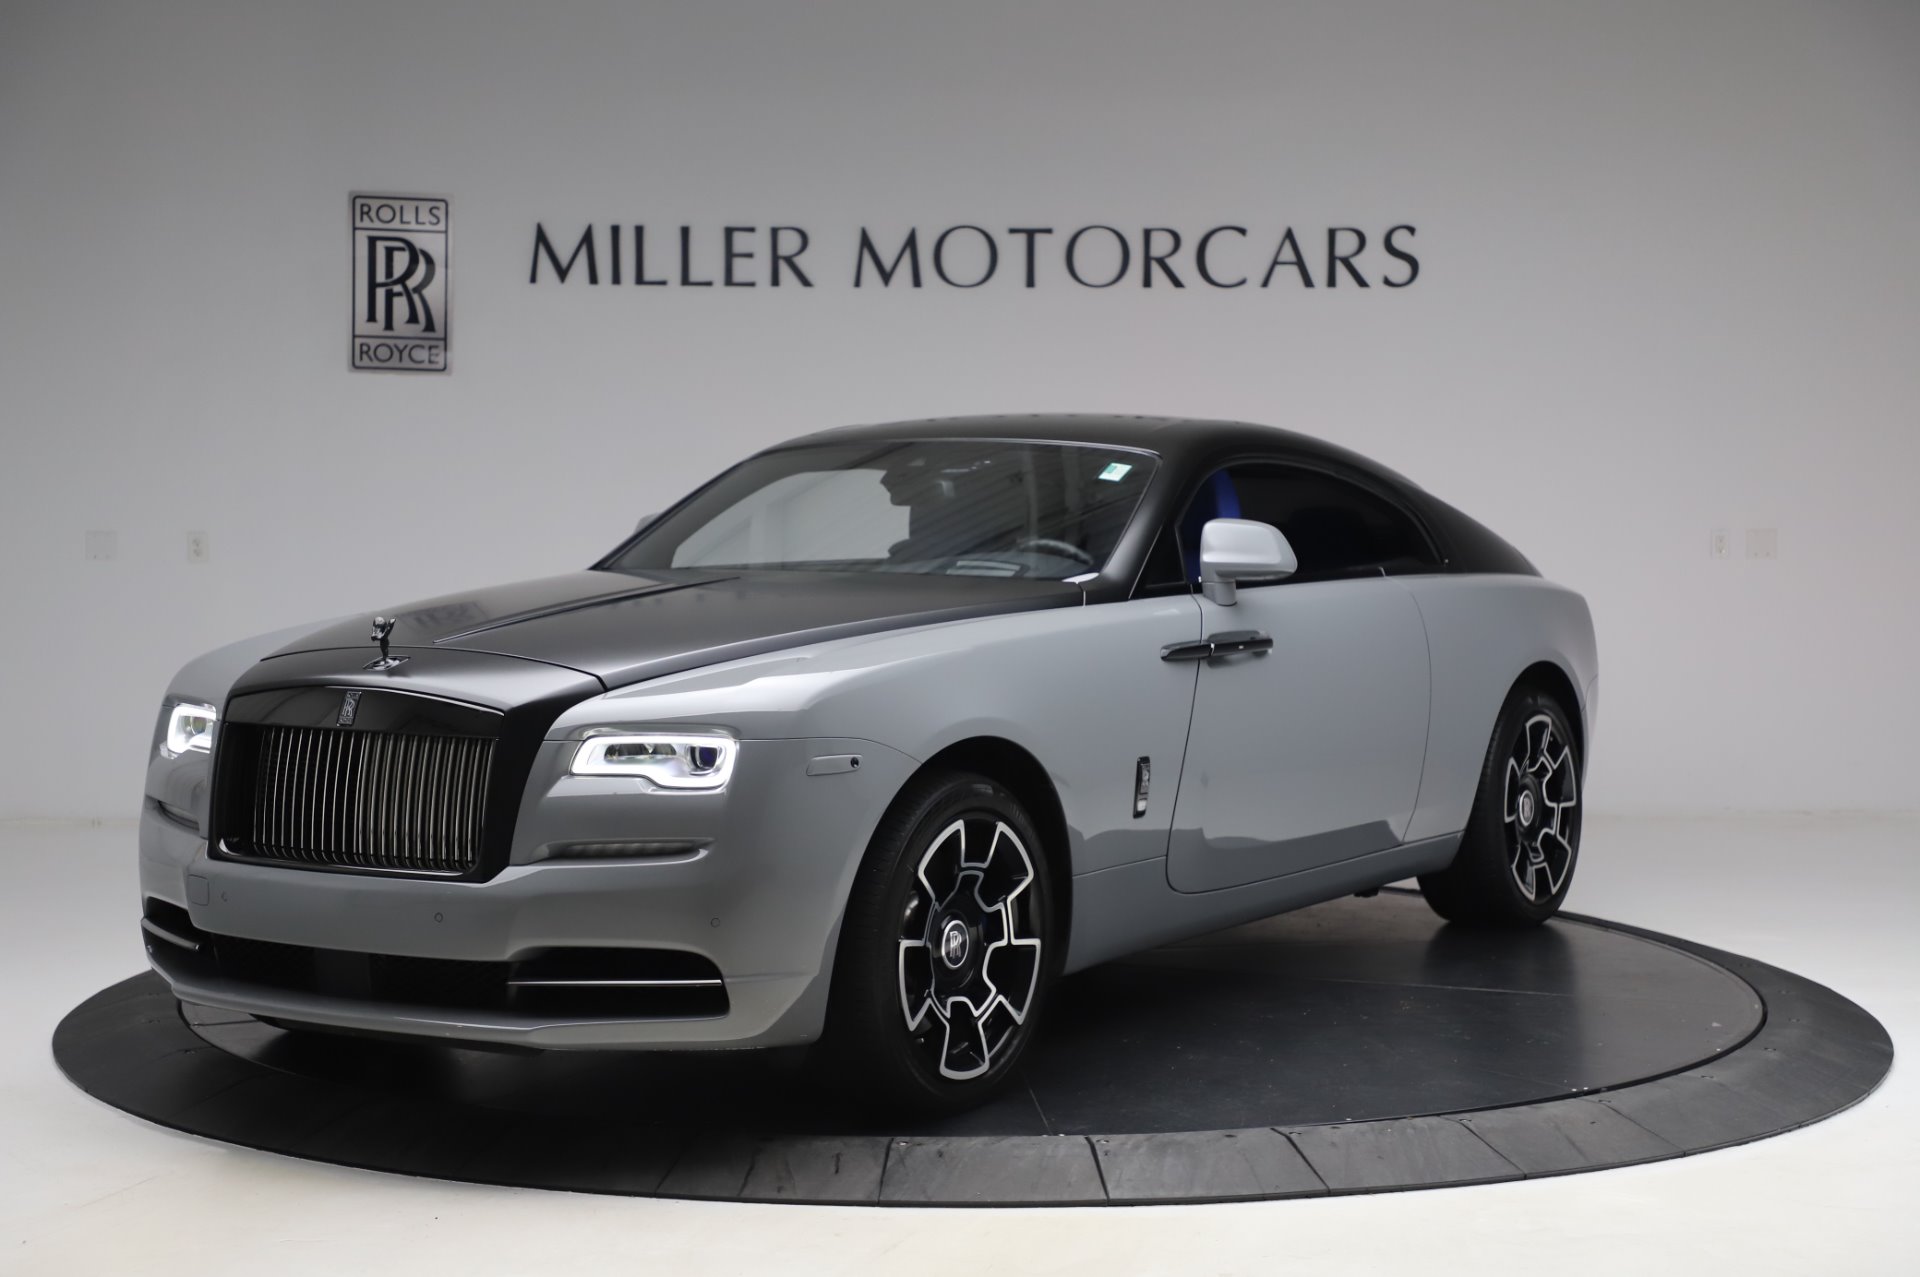 New 2018 RollsRoyce Wraith Black Badge For Sale   Miller Motorcars  Stock R439